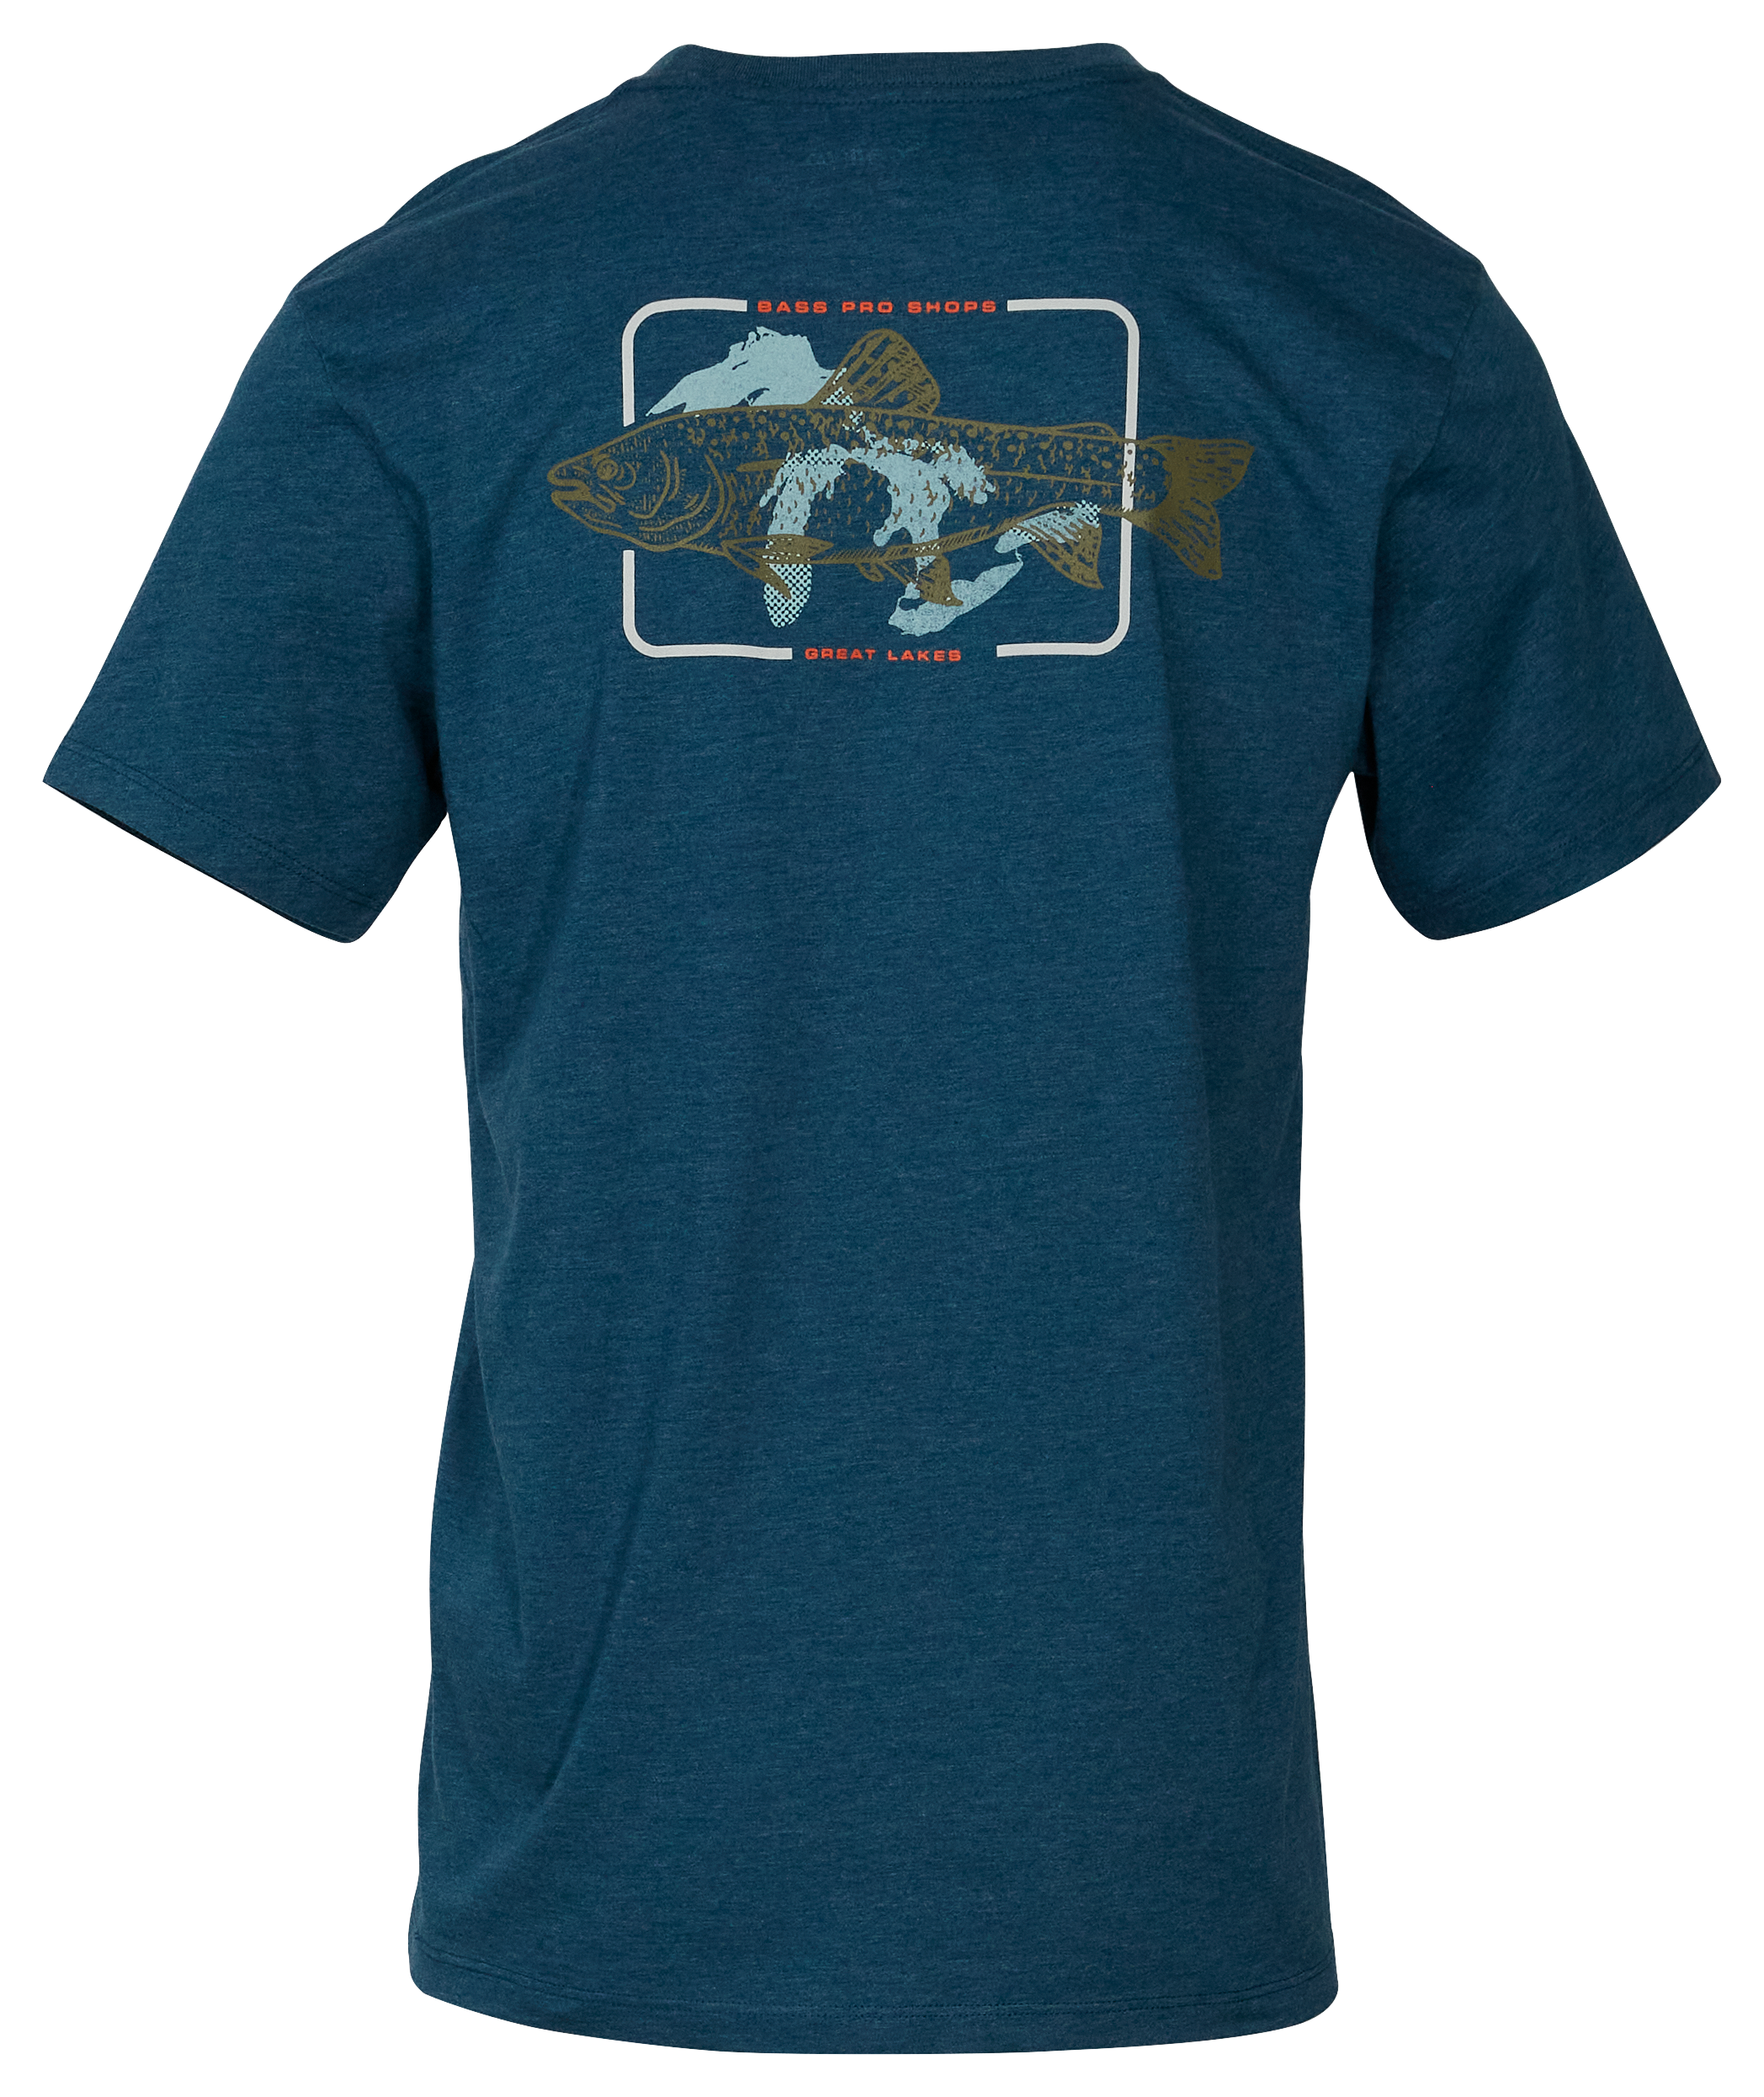  Can you Jig it? Walleye Fishing Shirts T-Shirt : Clothing,  Shoes & Jewelry